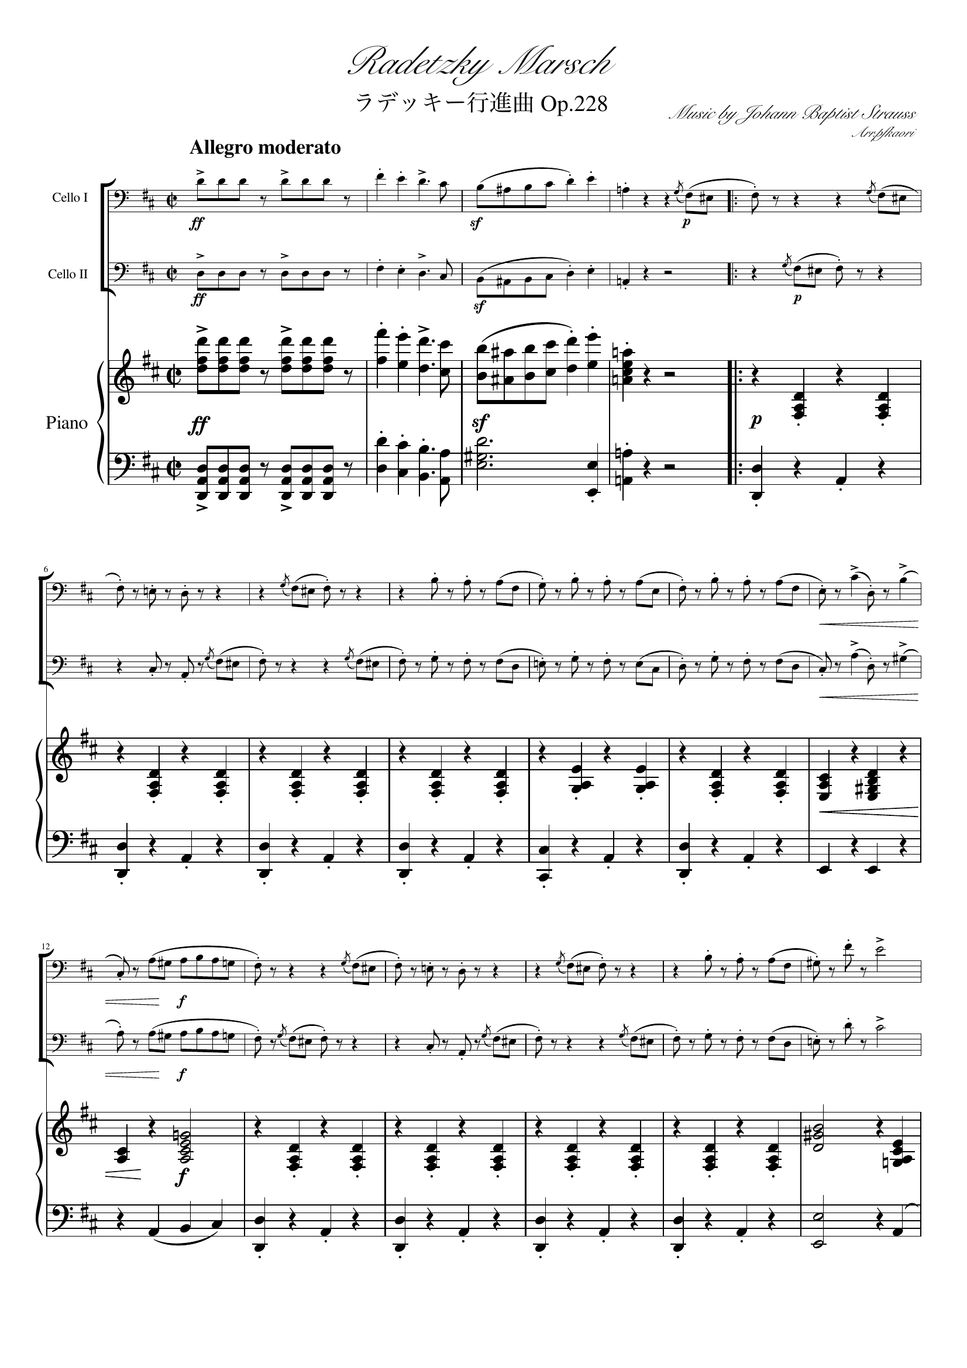 ヨハンシュトラウス1世 - ラデッキー行進曲 (D・ピアノトリオ/チェロデュオ) by pfkaori